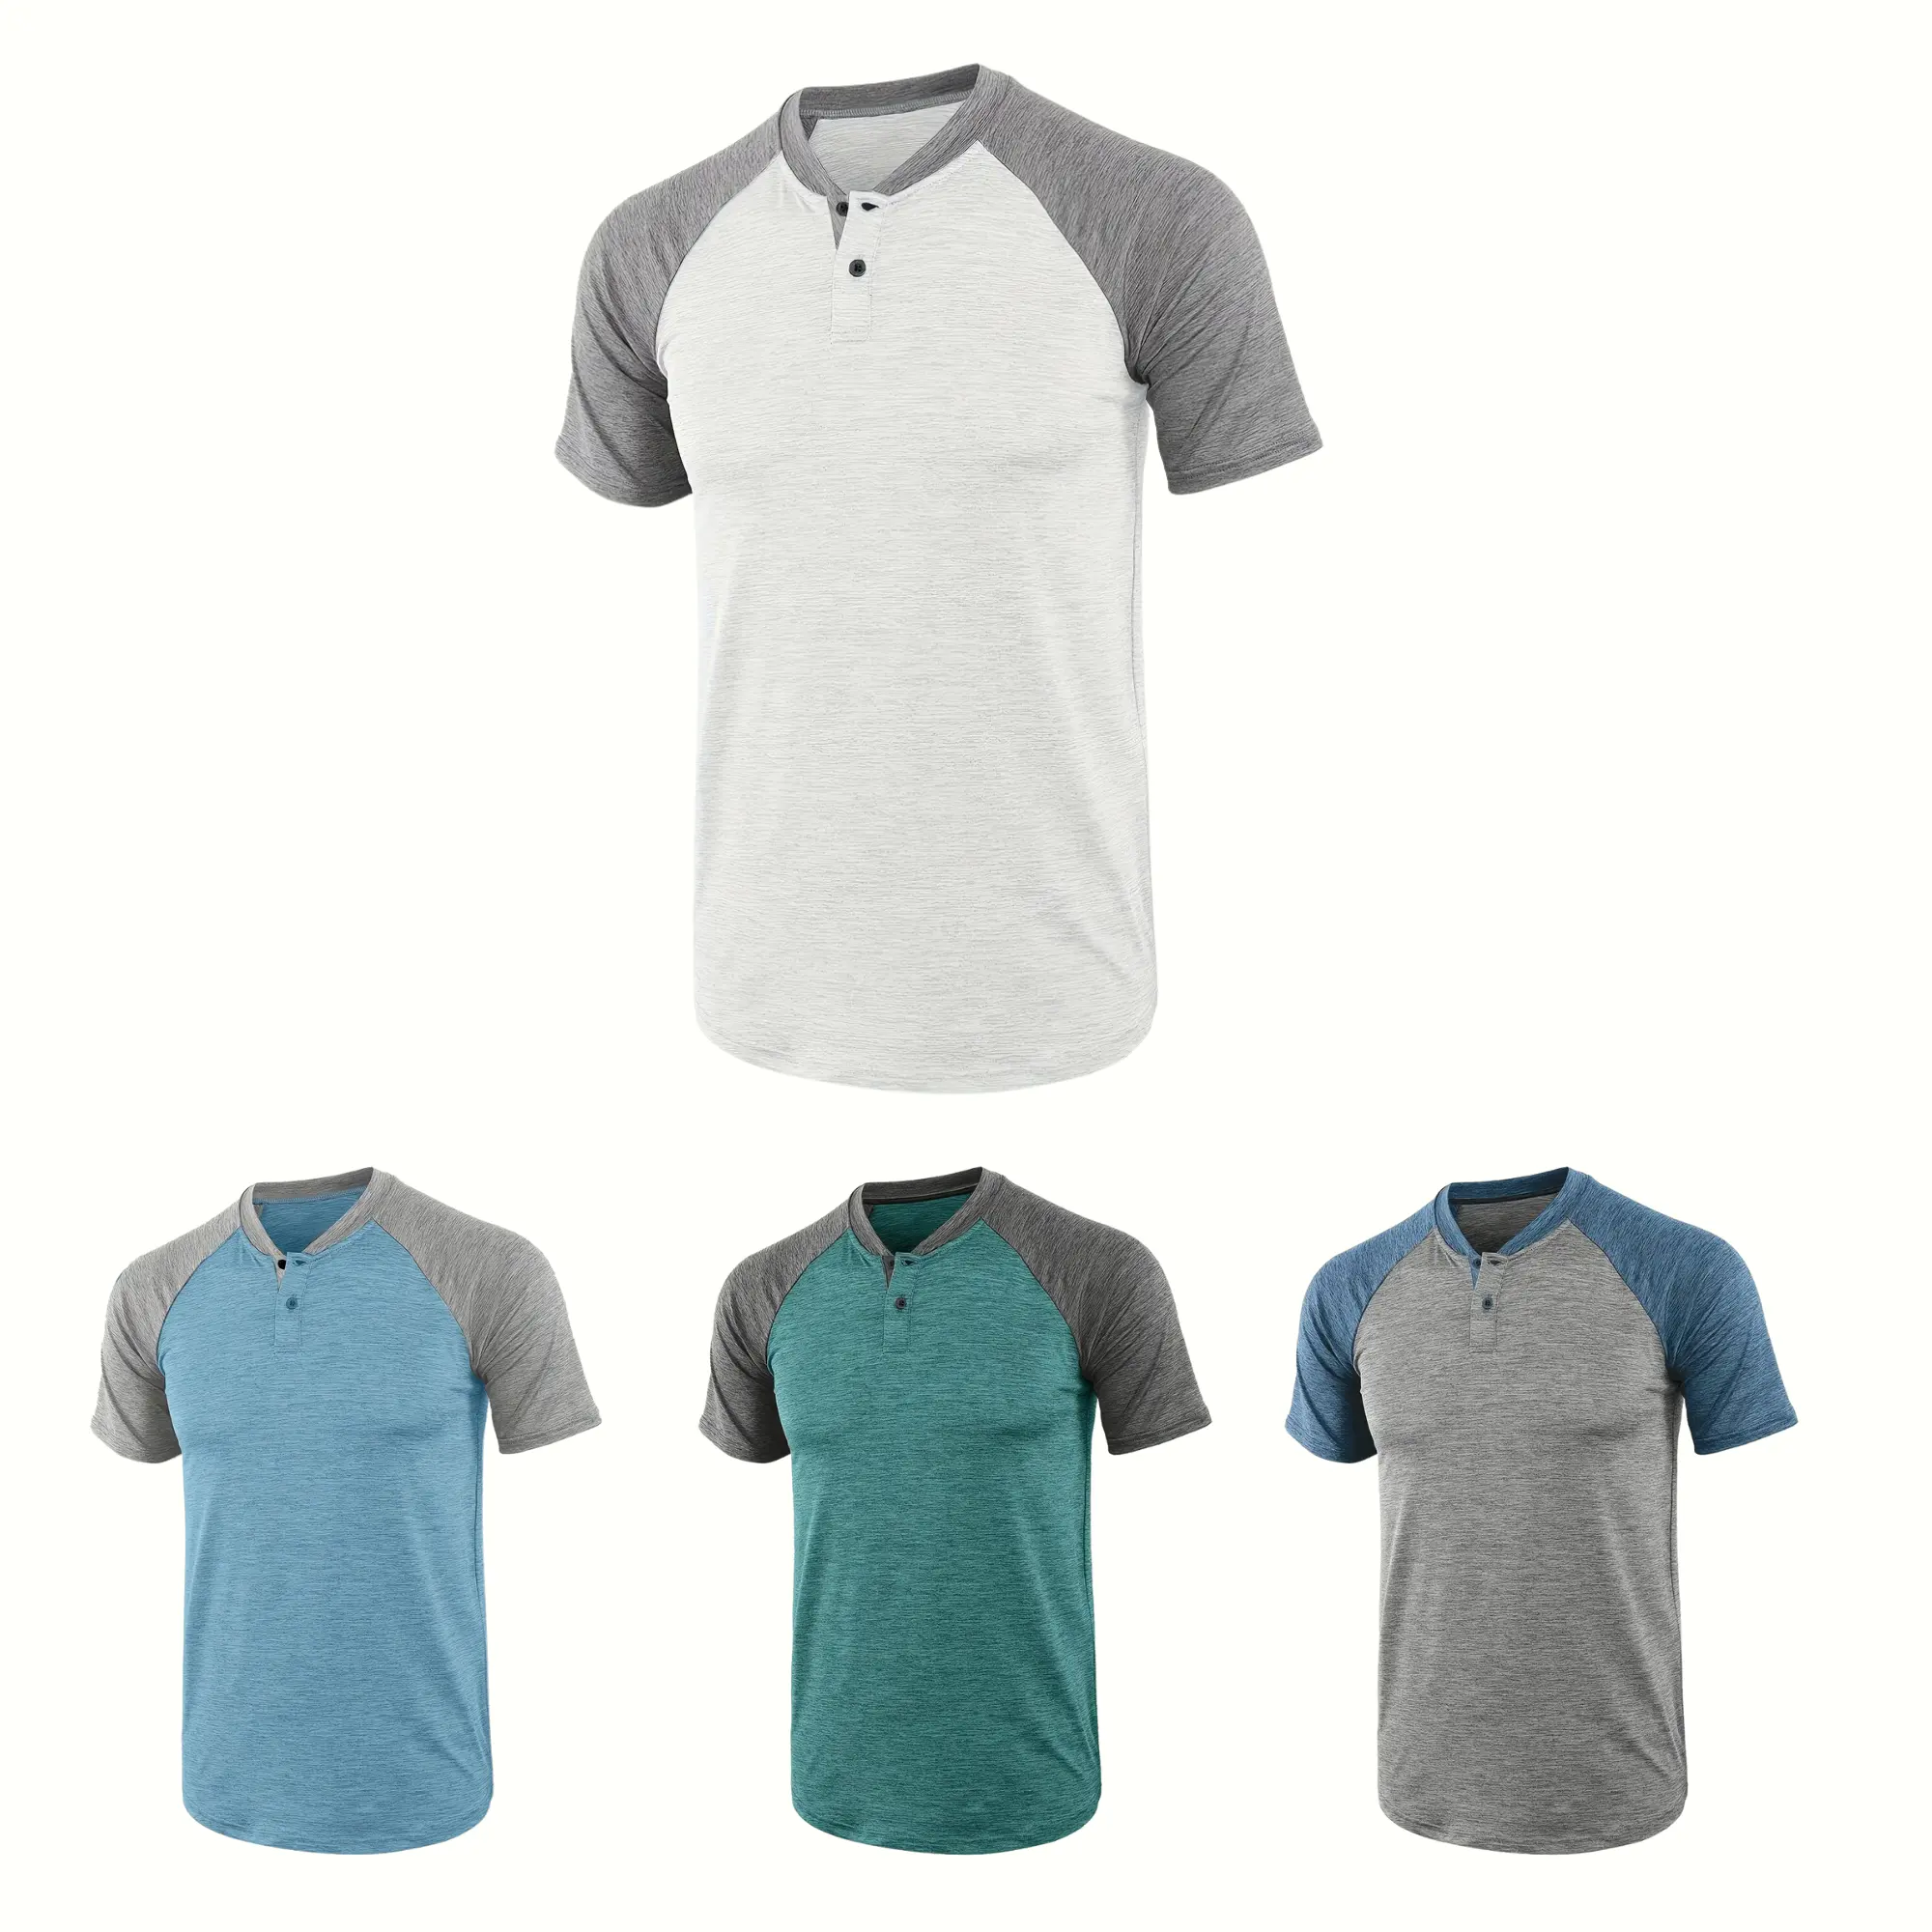 TT01-OEM 서비스 무료 샘플 남성 의류 남성 부드러운 짧은 소매 o-넥 맞춤 스포츠 티셔츠 베트남